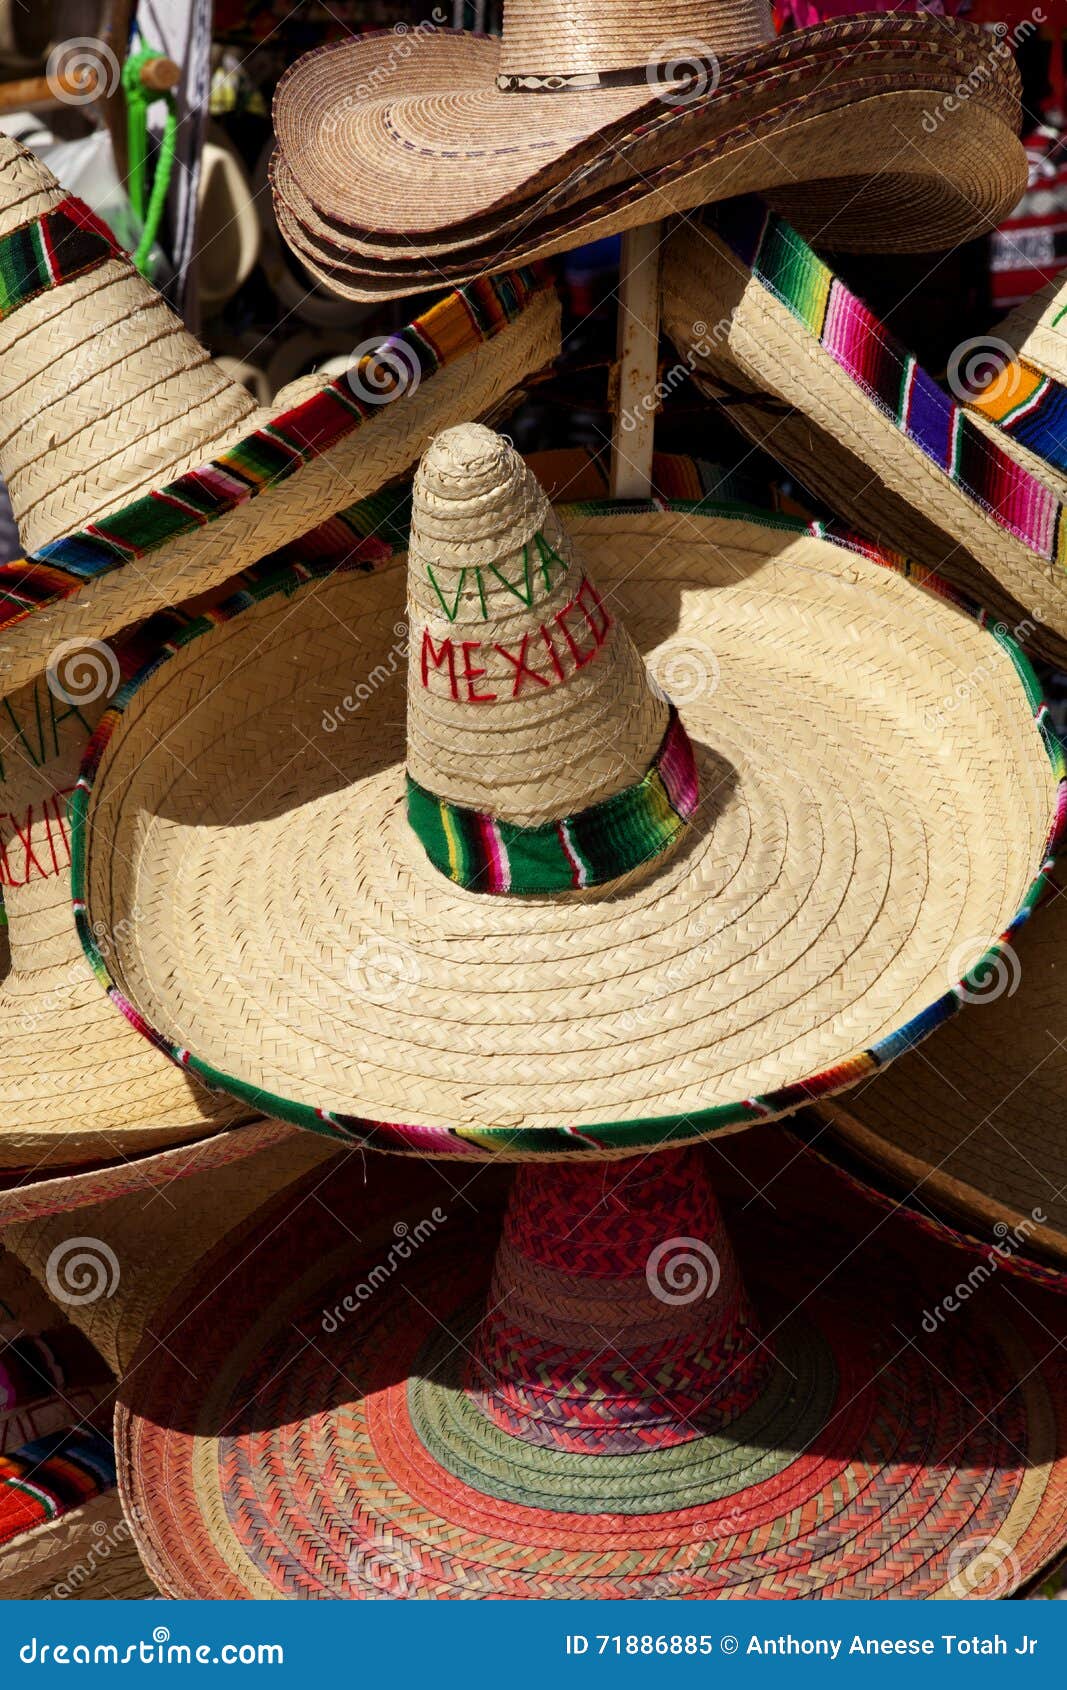 mexican sombreros